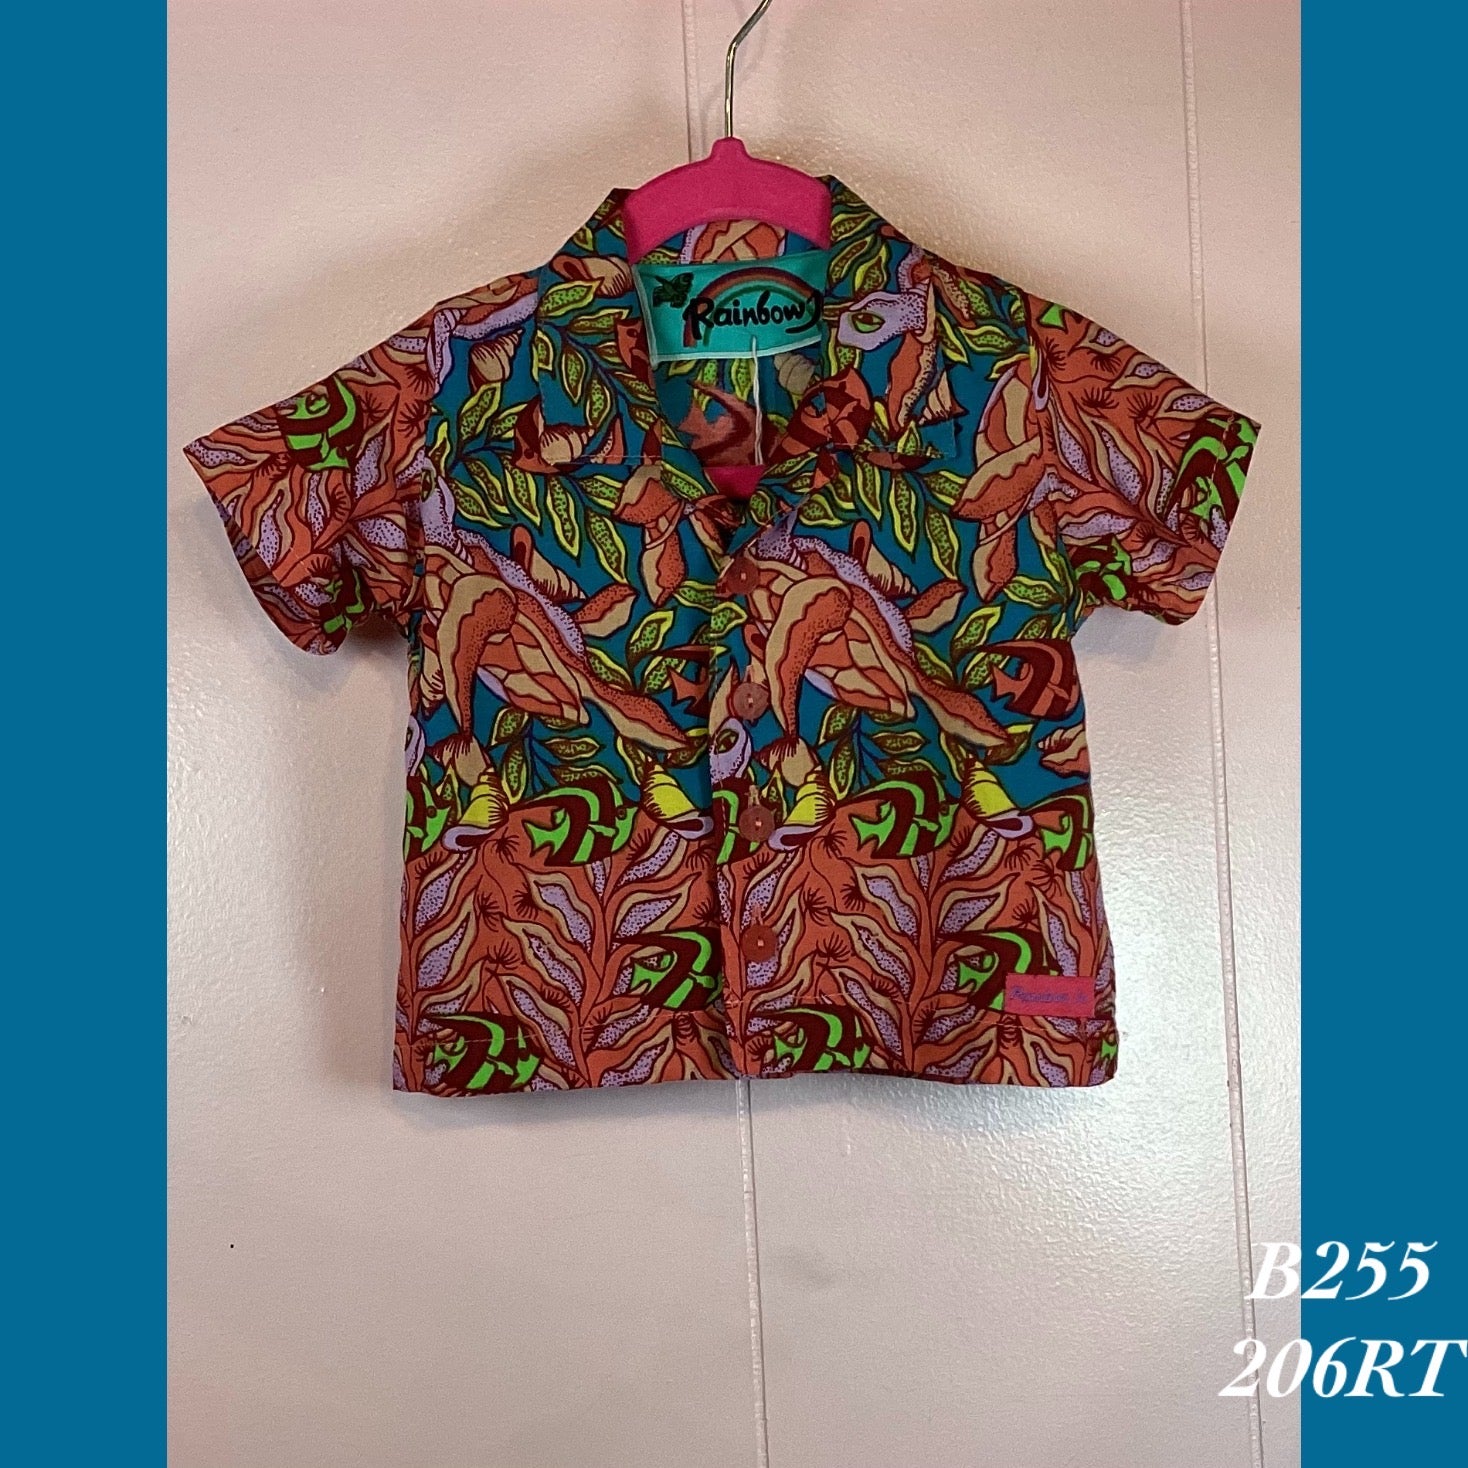 B255 - 206RT , Baby boy's Aloha shirt